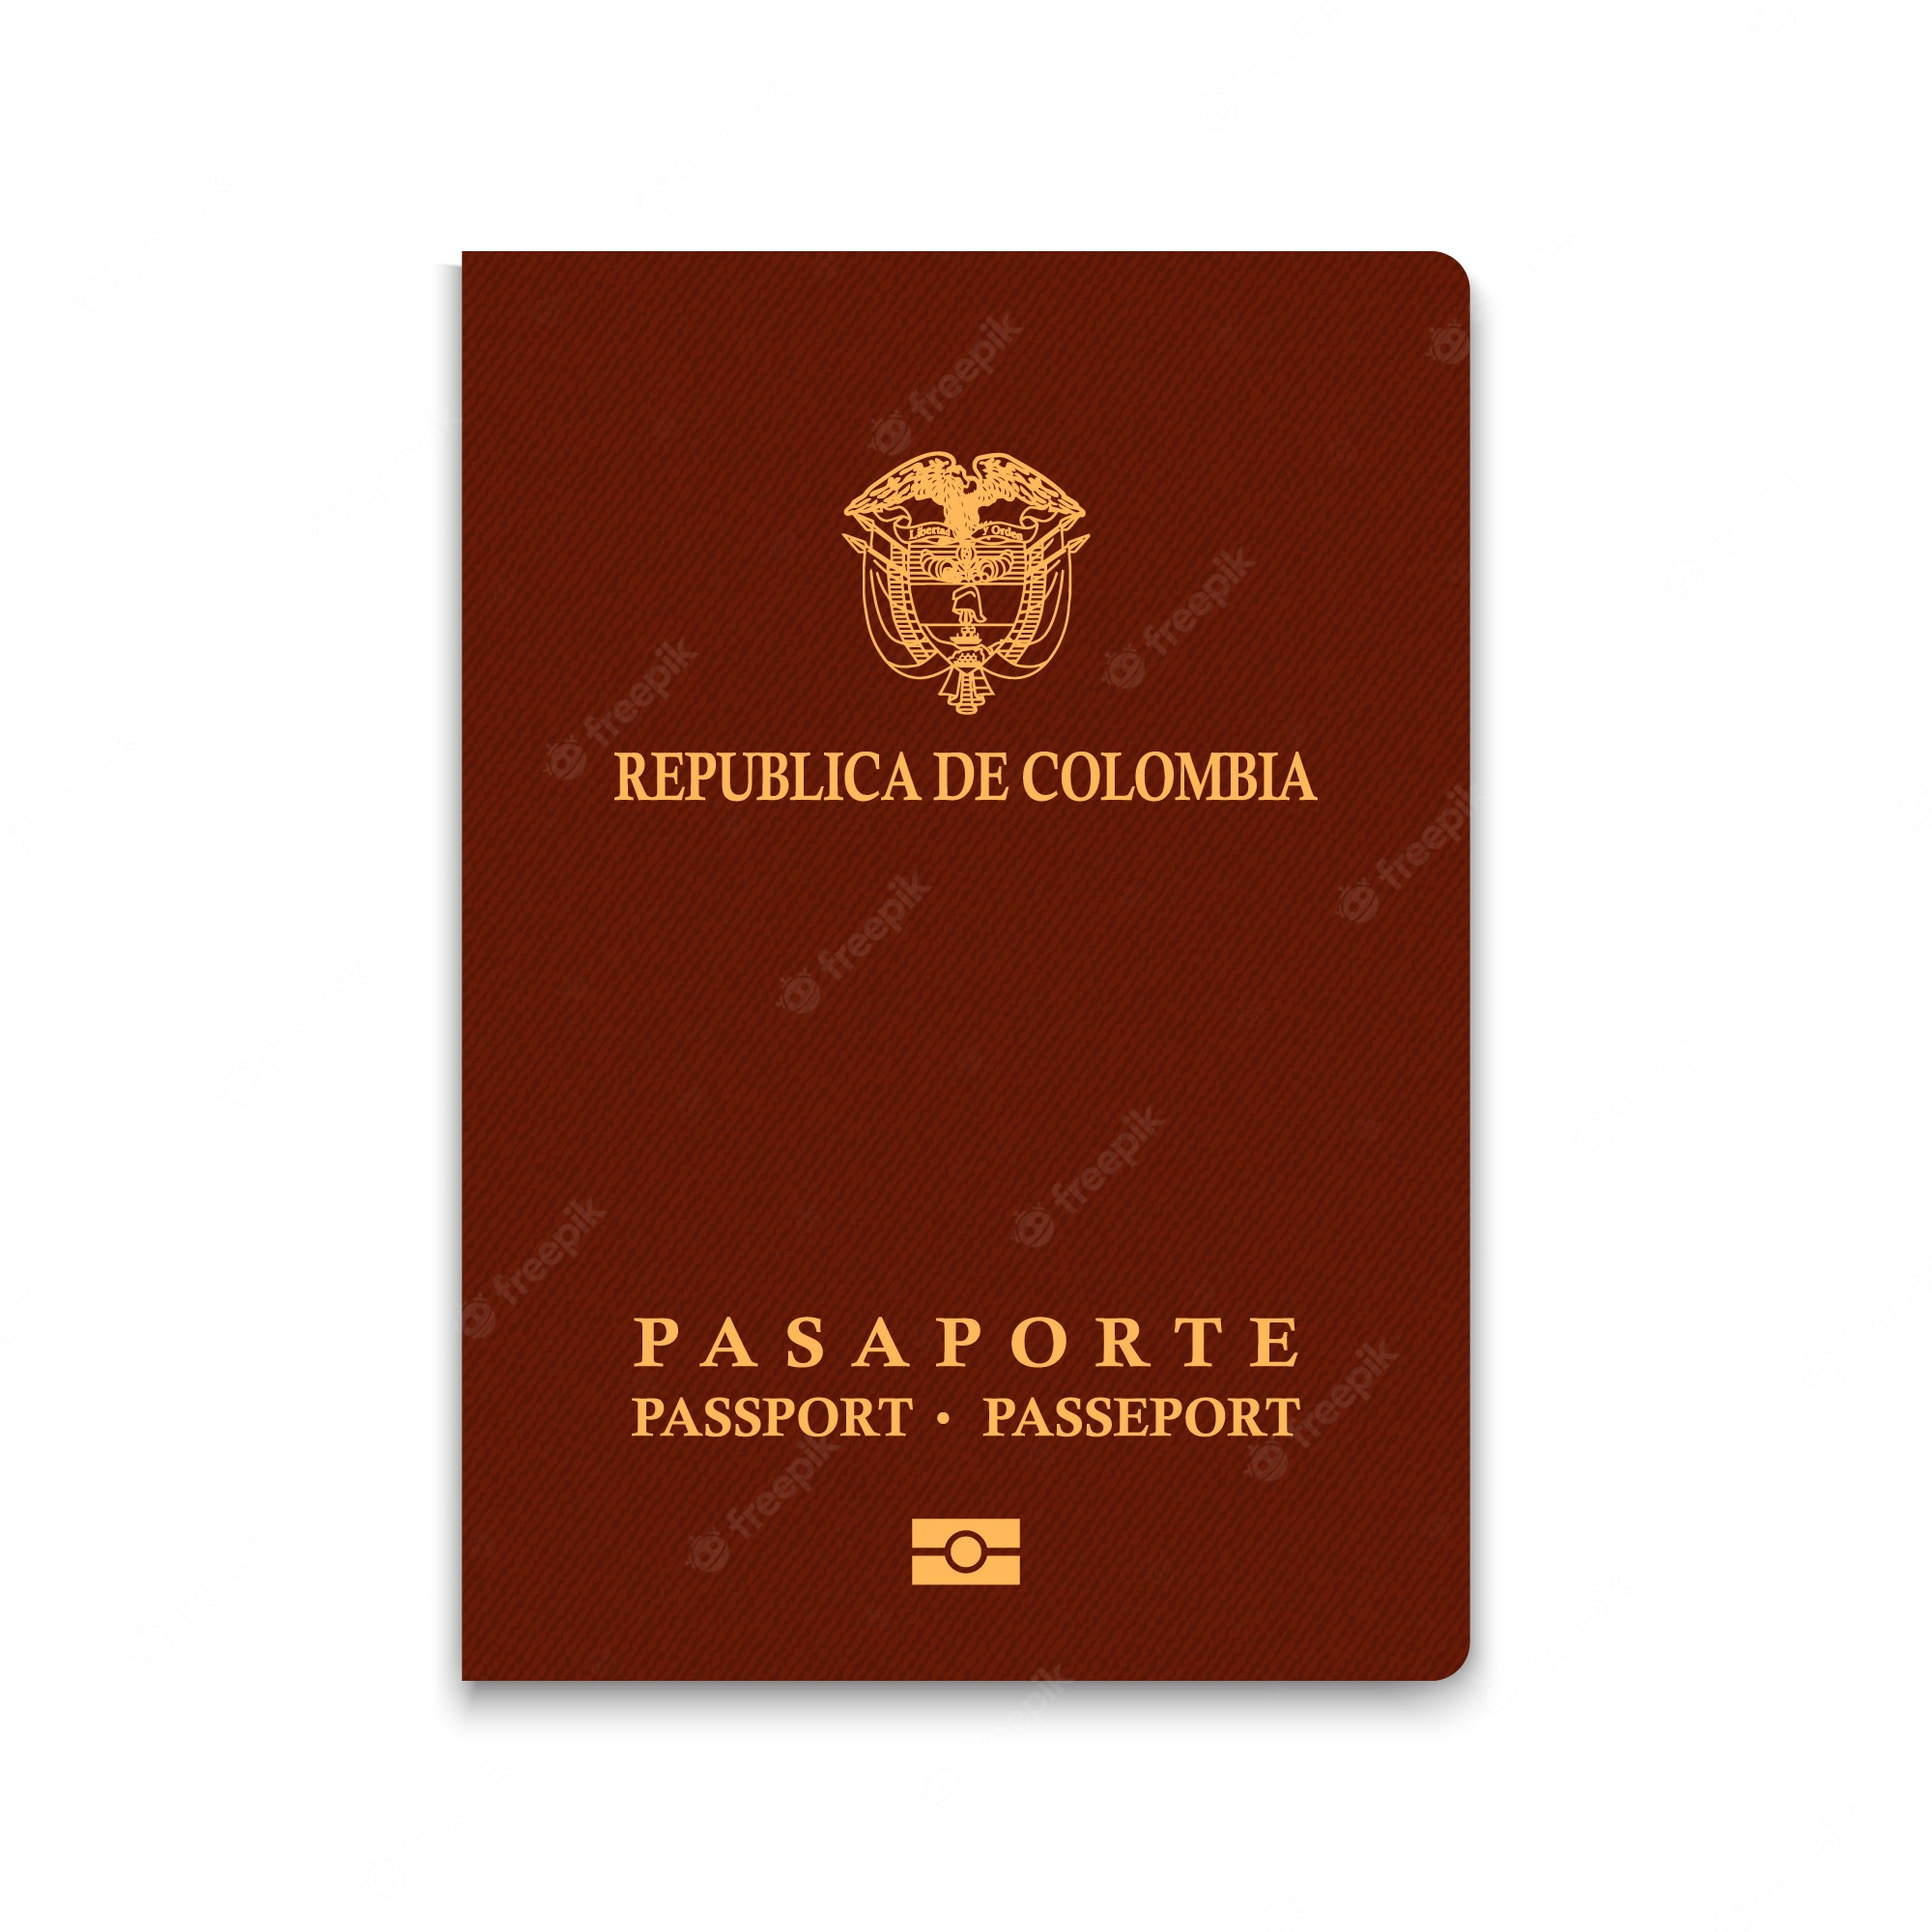 proceso-para-sacar-el-pasaporte-colombiano-caf-con-colombia